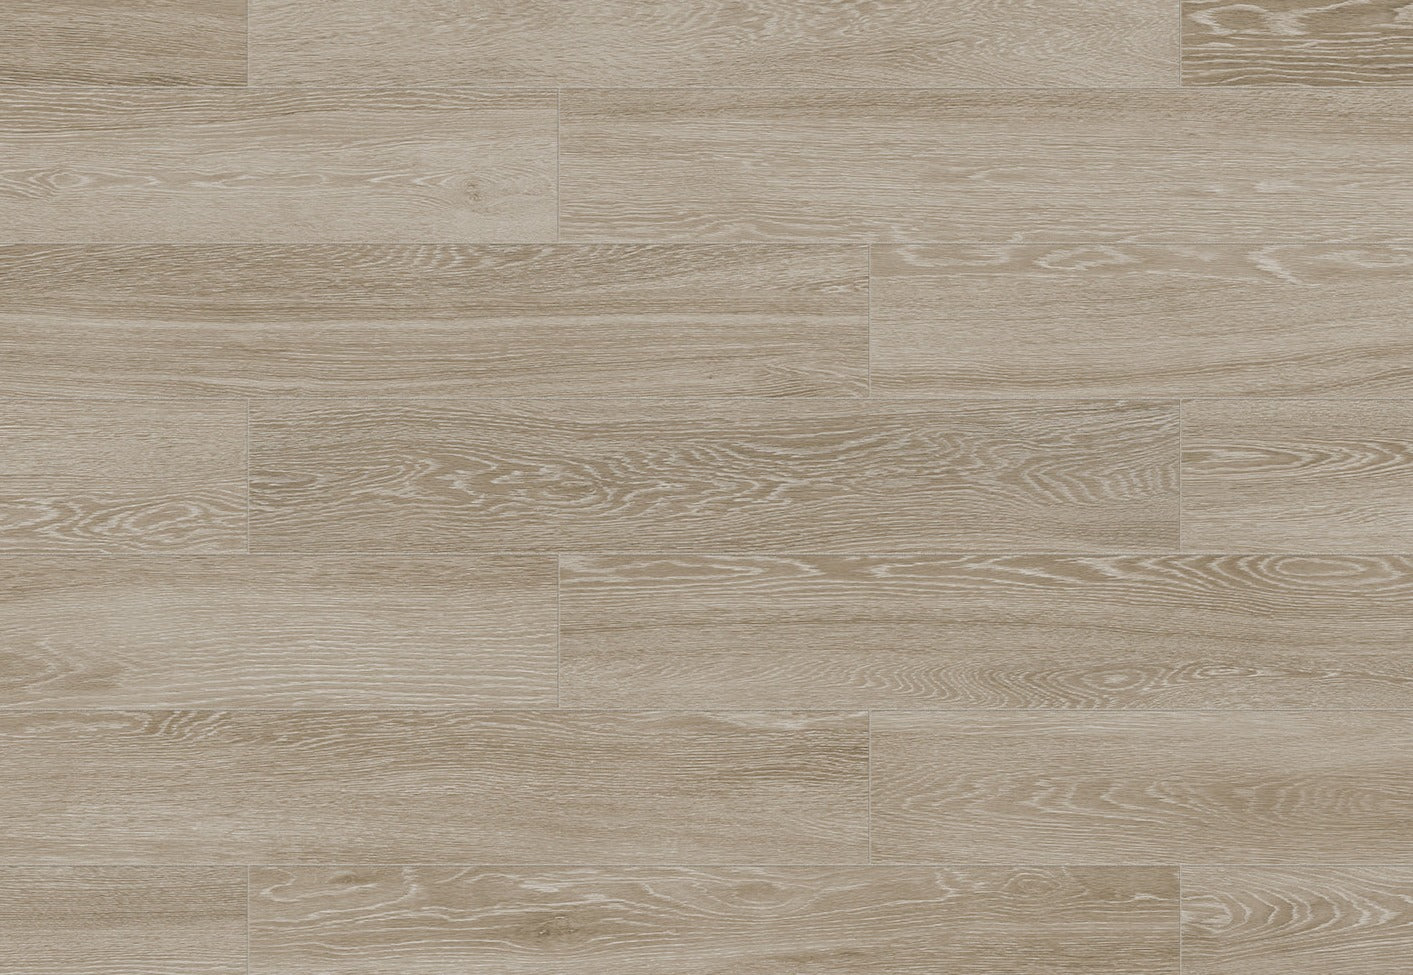 Wood Tile - Aspen French Oak HD 6x36 $5.99/sf 11.41 sf/box